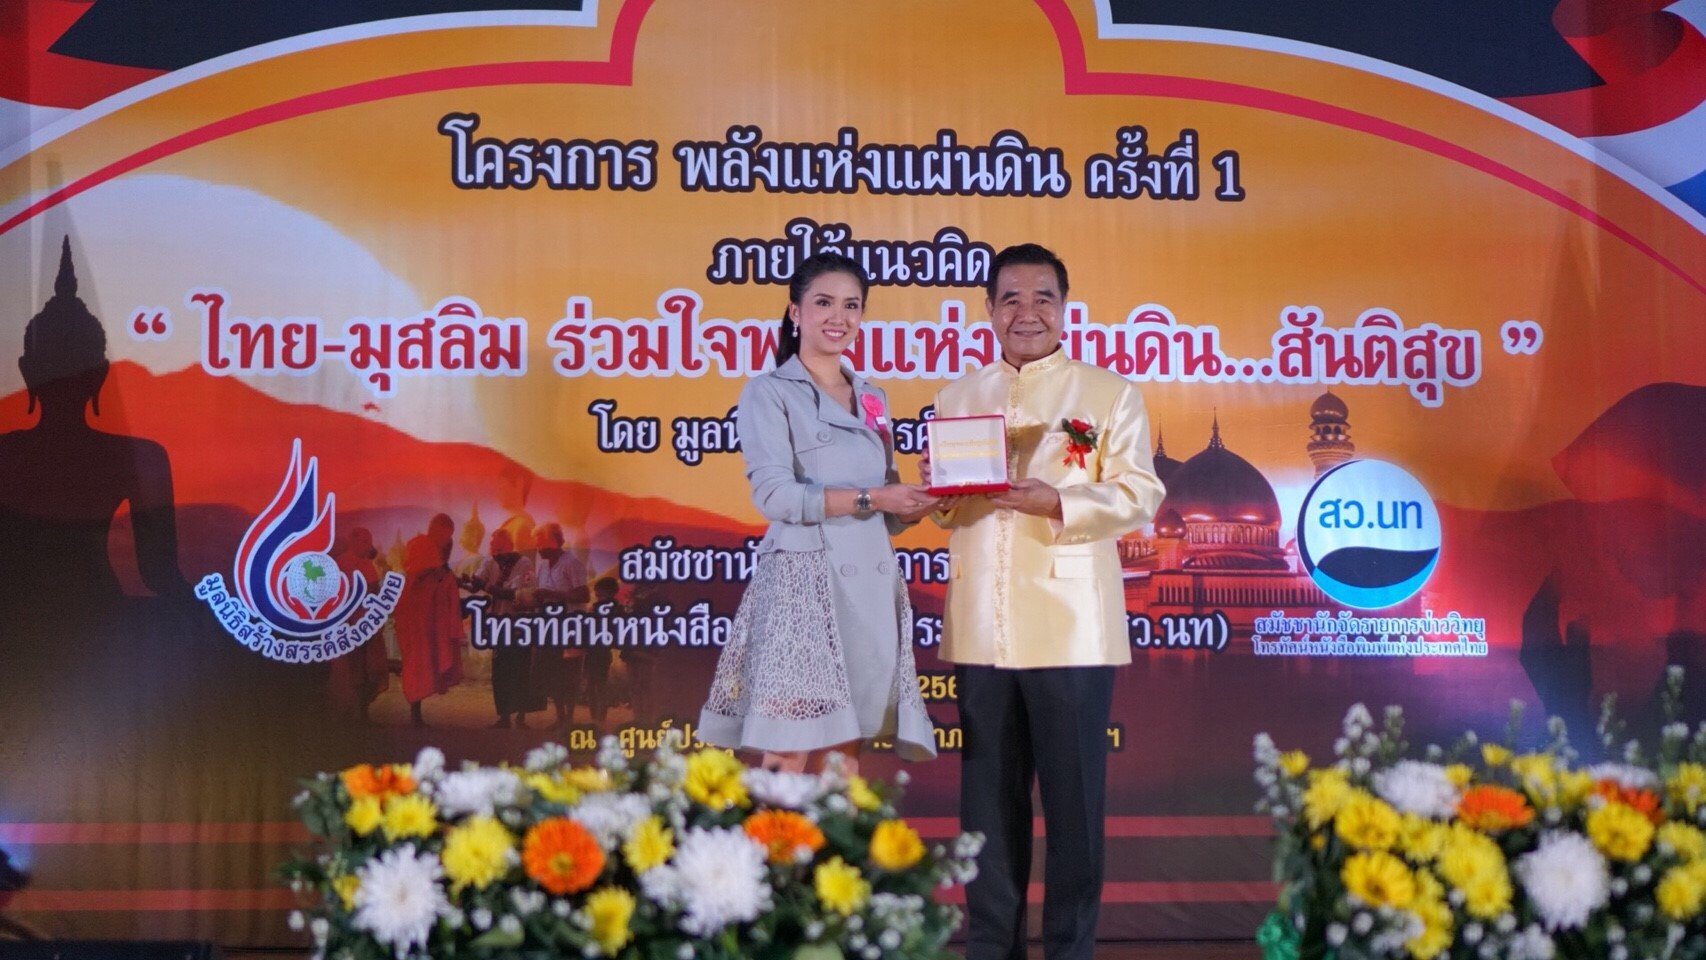 เหรียญทองเชิดชูเกียรติ “บุคคลต้นแบบสังคมไทย” ประจำปี 2561 โครงการพลังแห่งแผ่นดิน ครั้งที่ 1 รินรดา รวีเลิศ